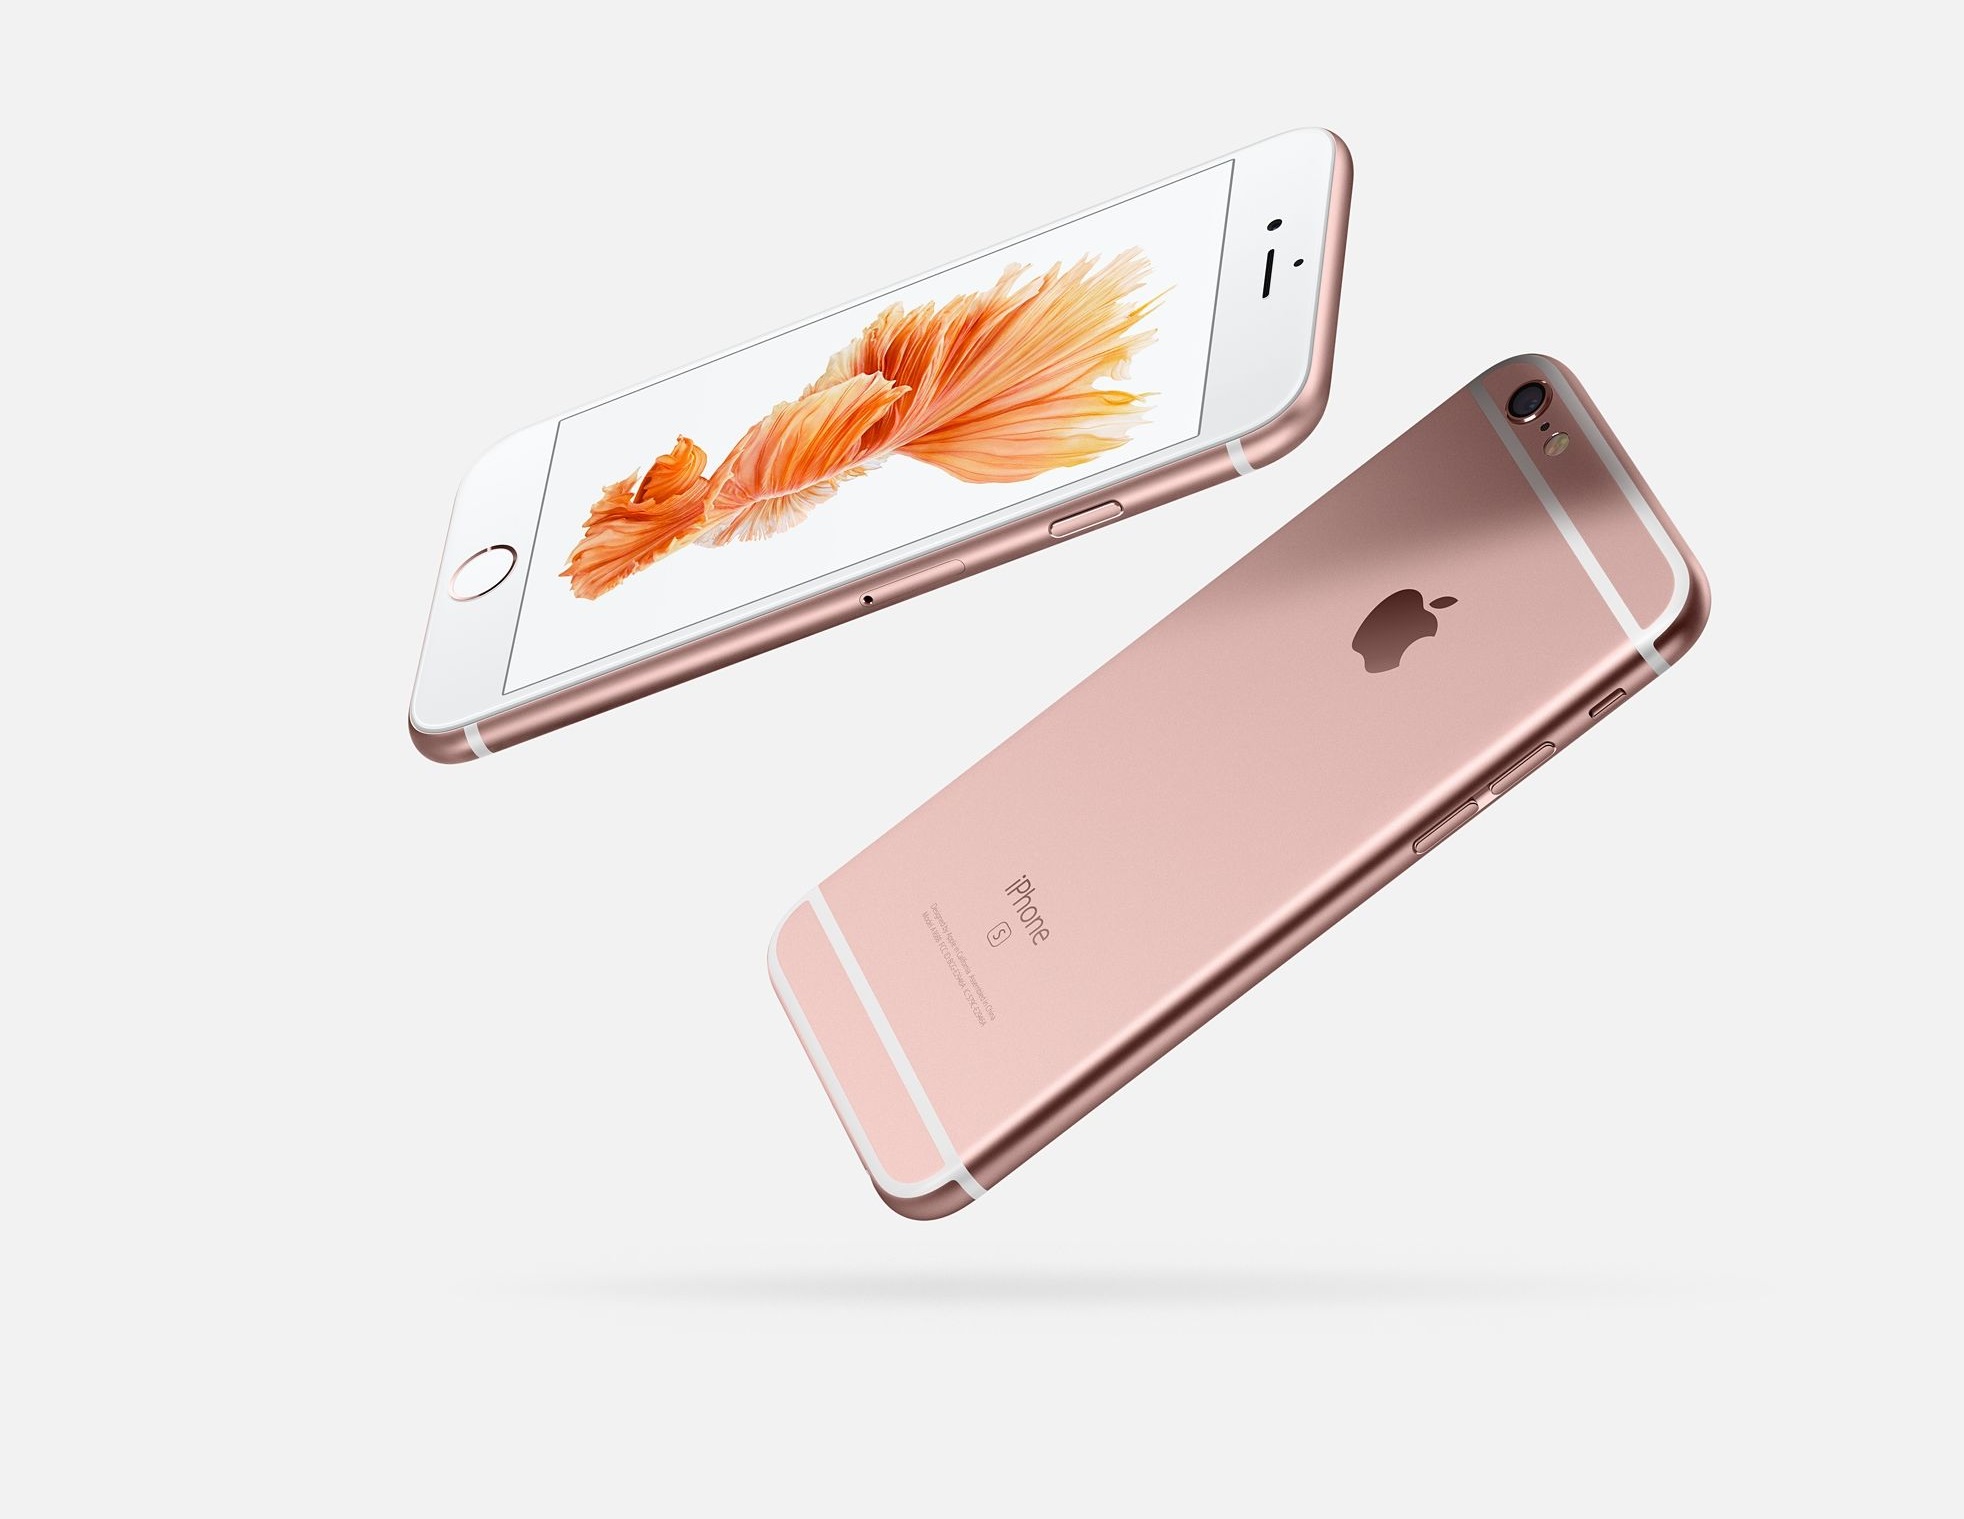 iPhone 6 Plus 16GB Gold chính hãng, giá tốt | nguyenkim.com